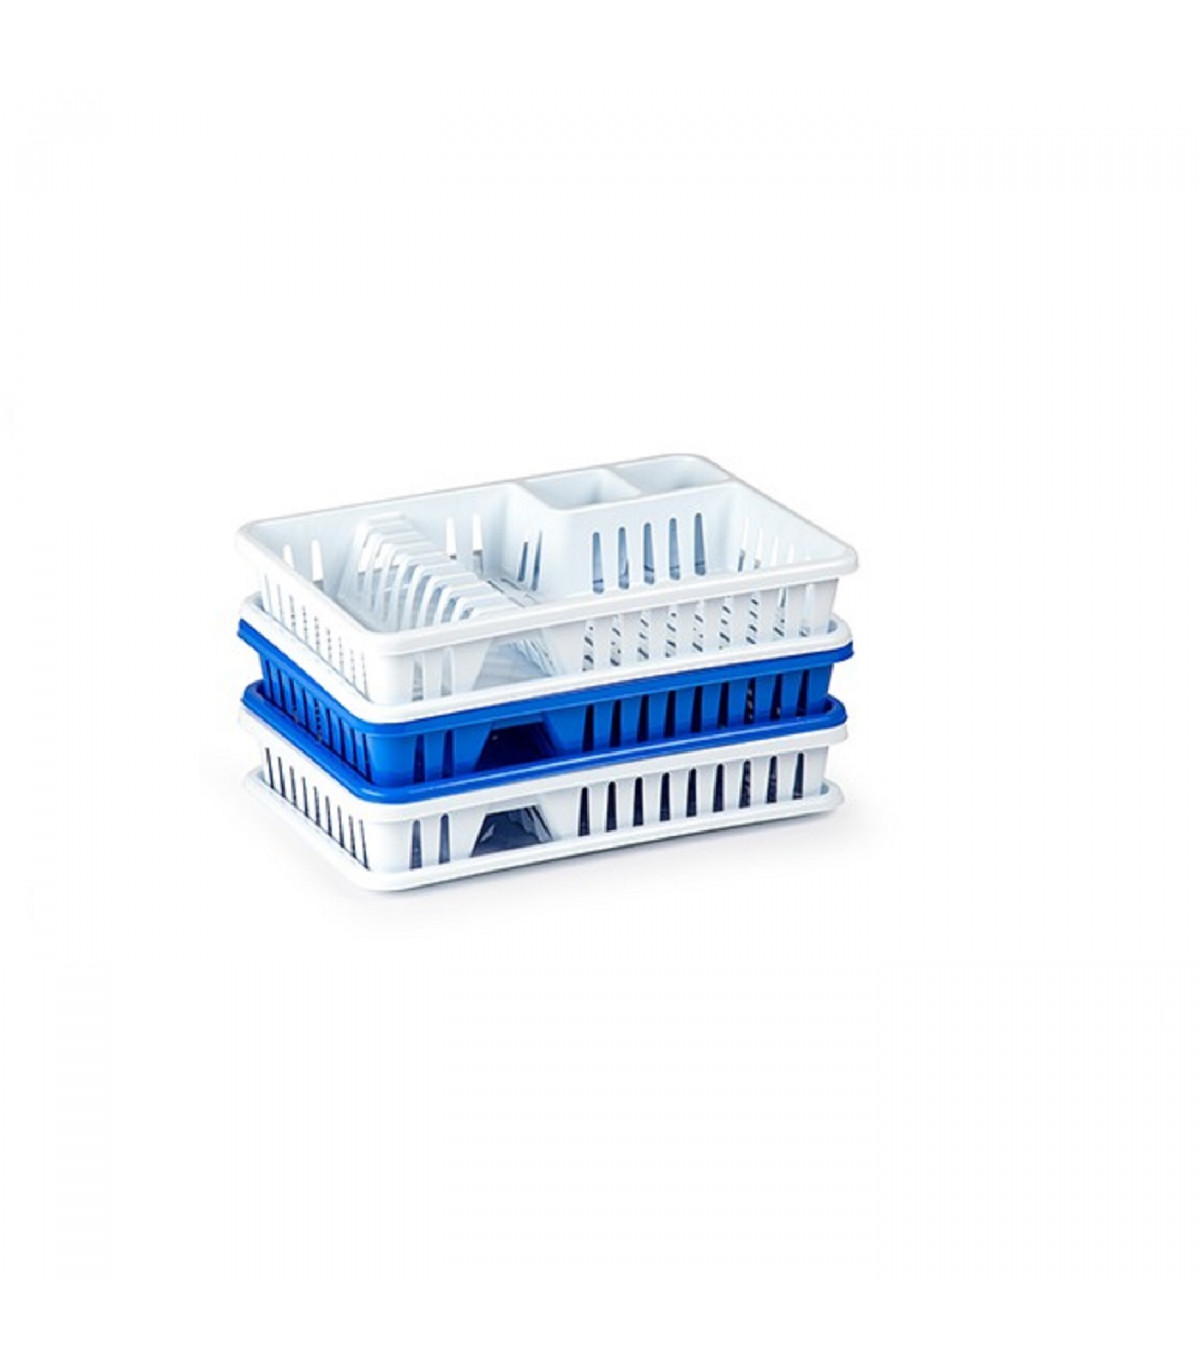 Tradineur - Escurreplatos blanco/azul plástico rectángular 45 x 29